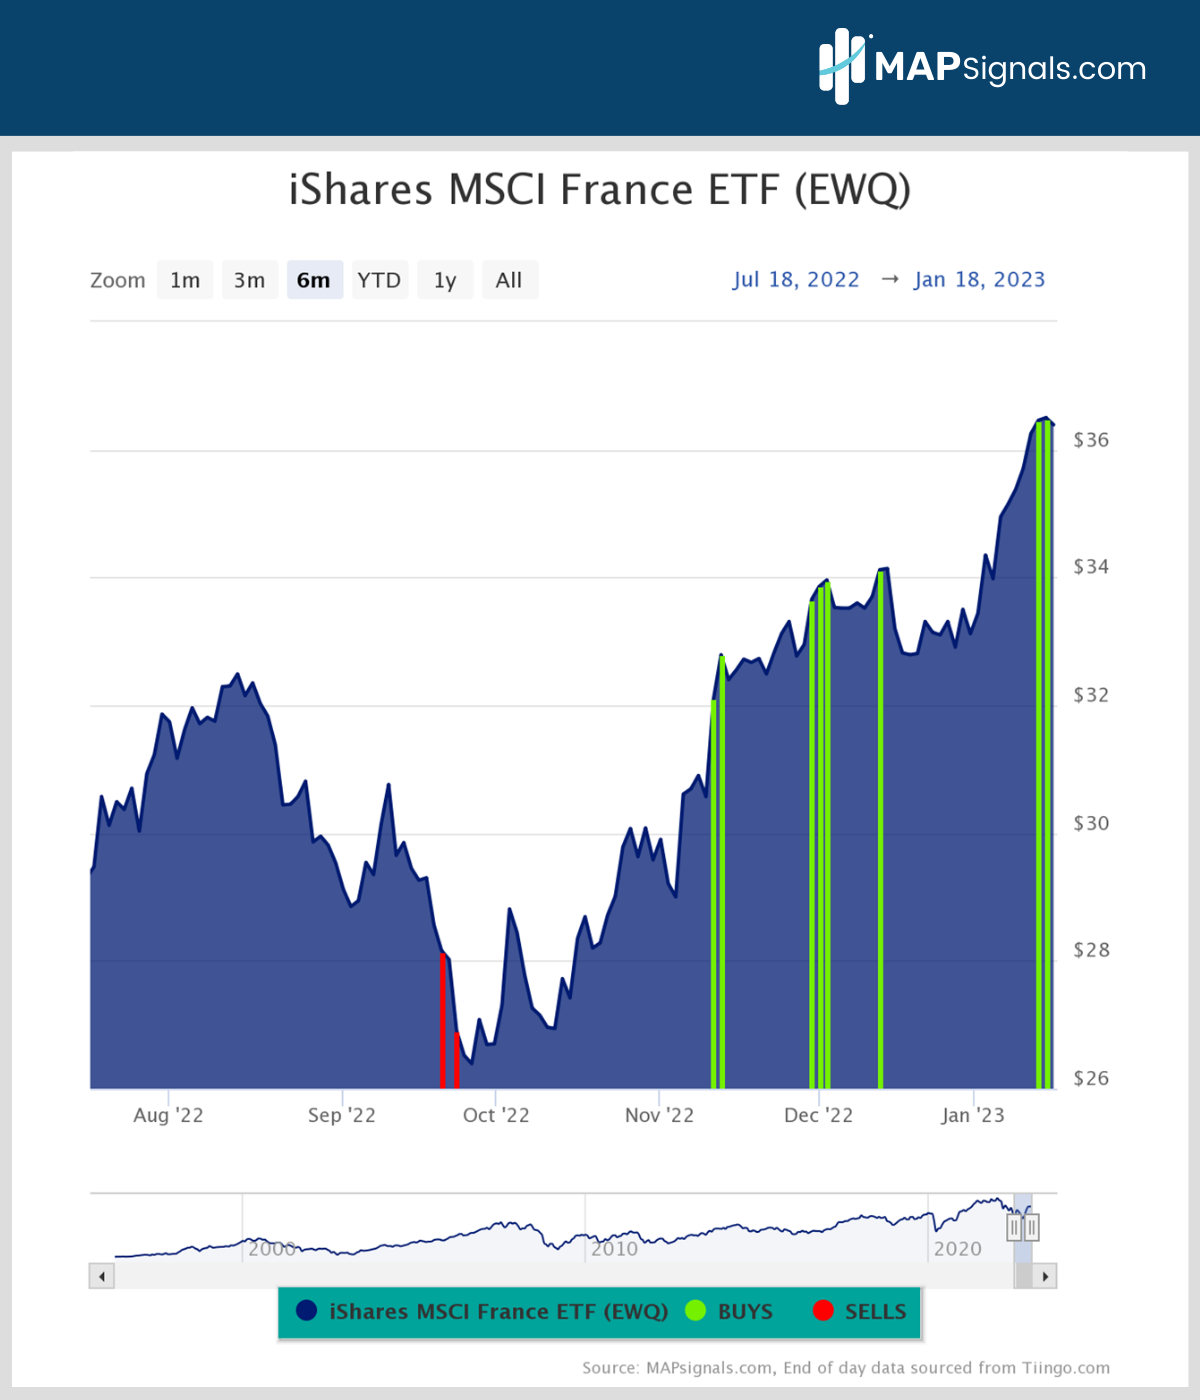 iShares MSCI France ETF (EWQ) | MAPsignals